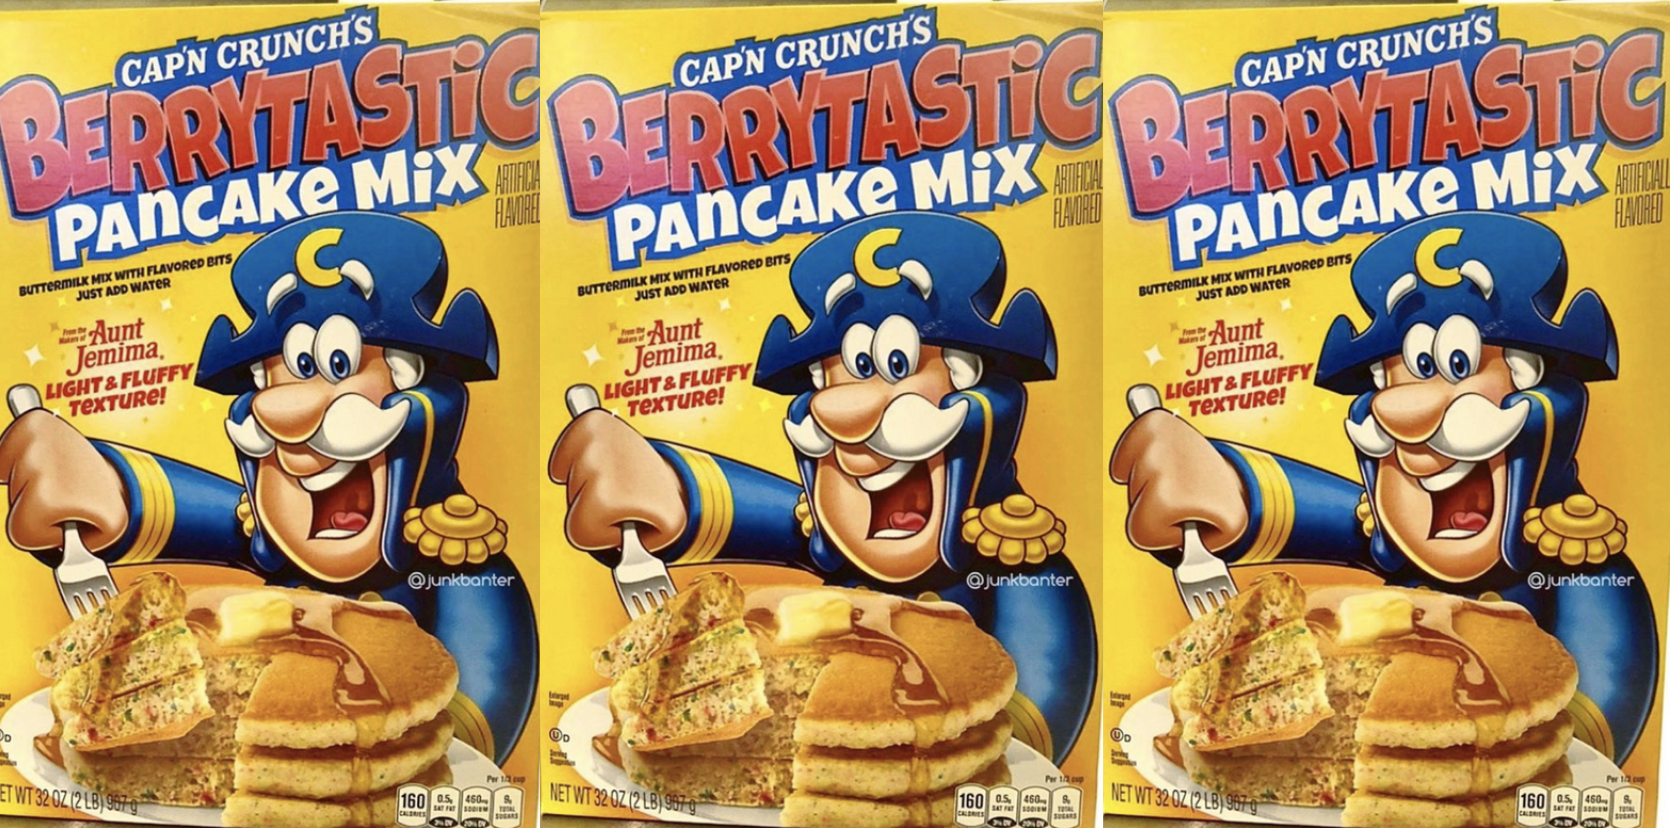 Cap'n Crunch Berrytastic Pancake Mix Is Coming Soon